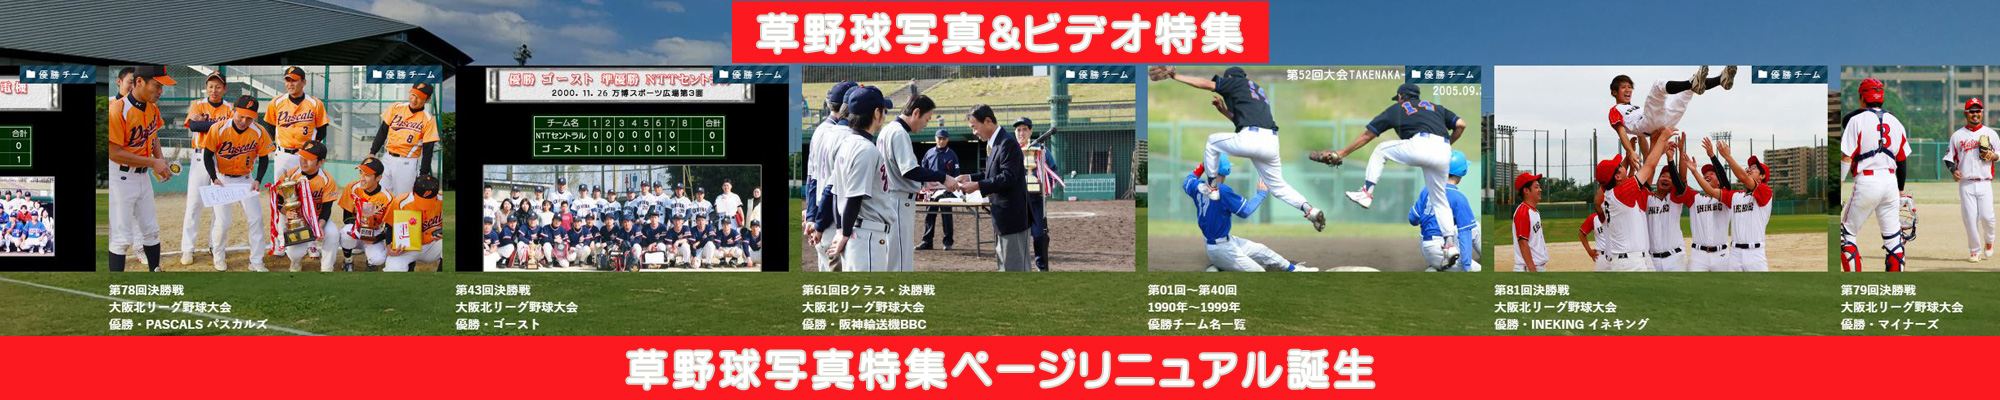 草野球写真検索サイト・大阪北リーグ野球大会